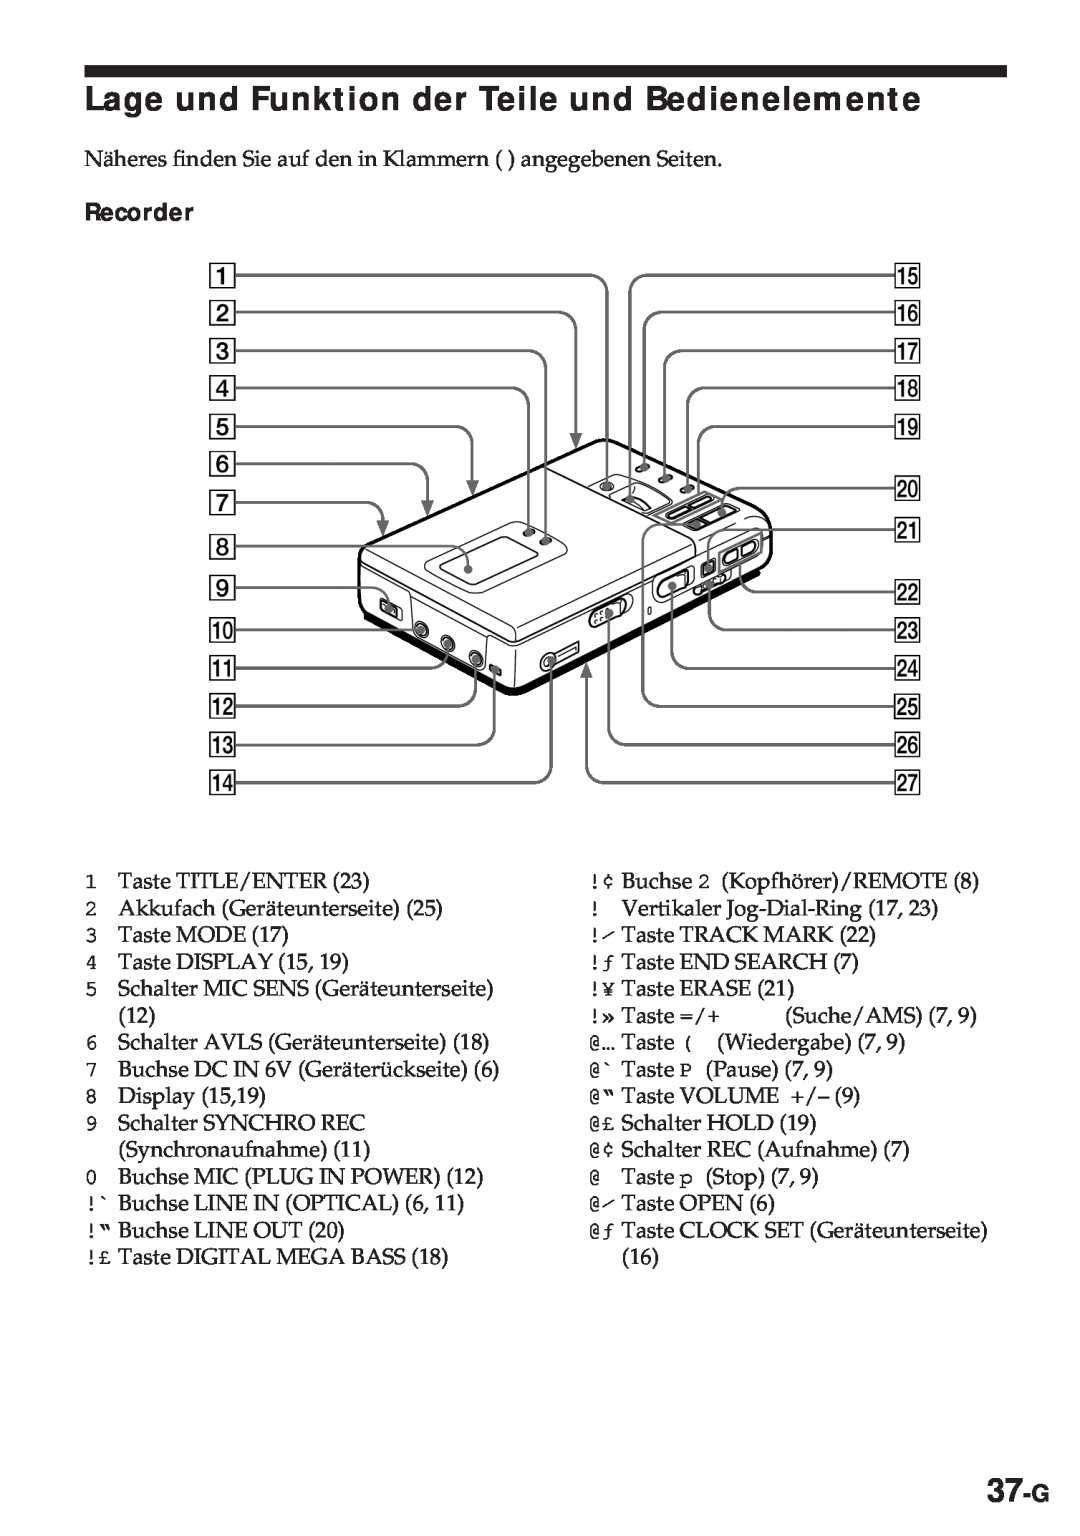 Sony MZ-R30 operating instructions Lage und Funktion der Teile und Bedienelemente, 37-G, Recorder 